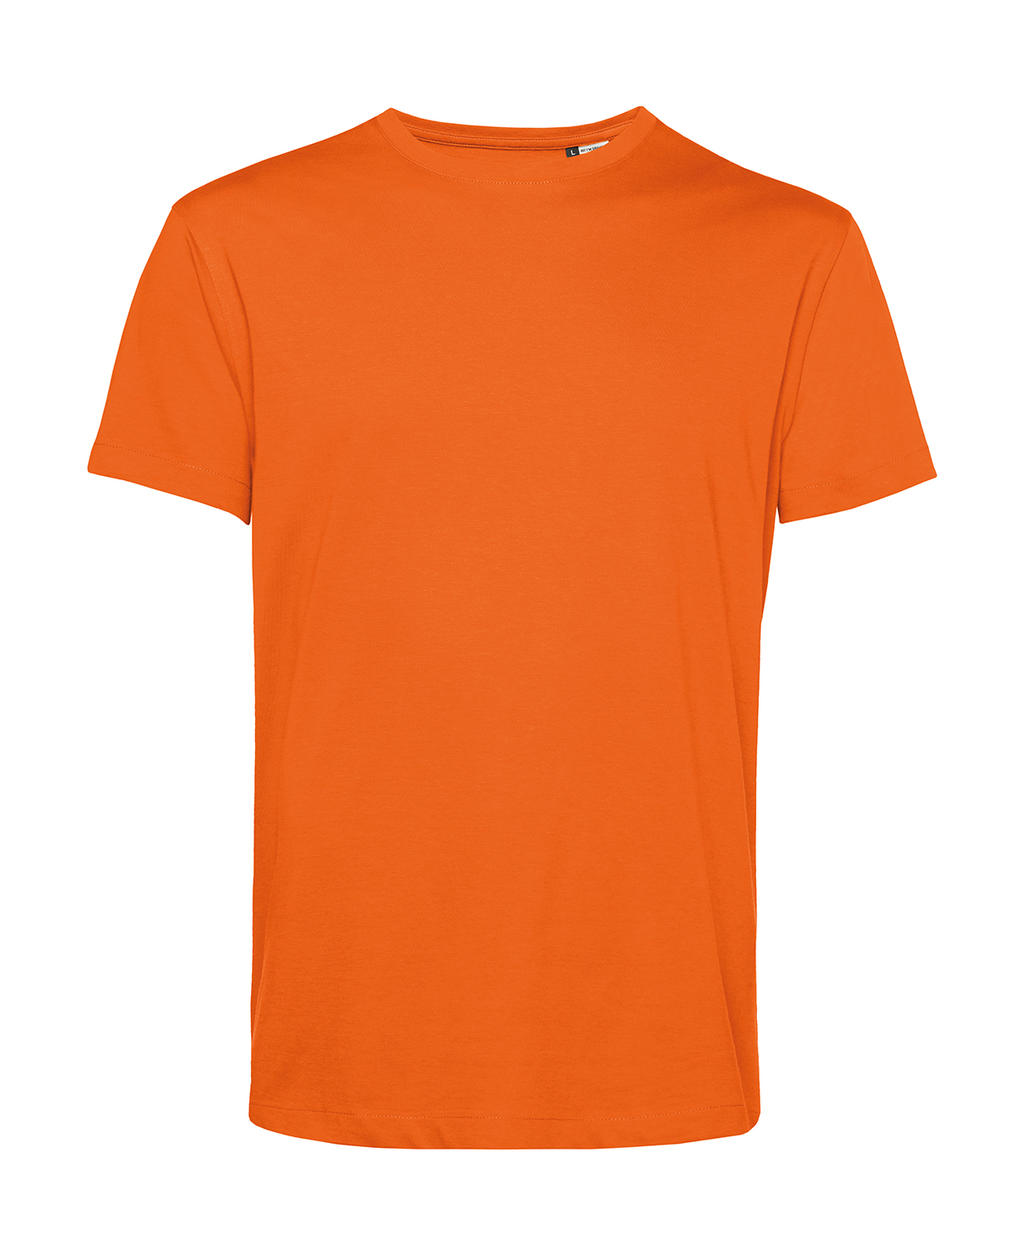 Tričko BC Organic Inspire E150 - oranžové, S